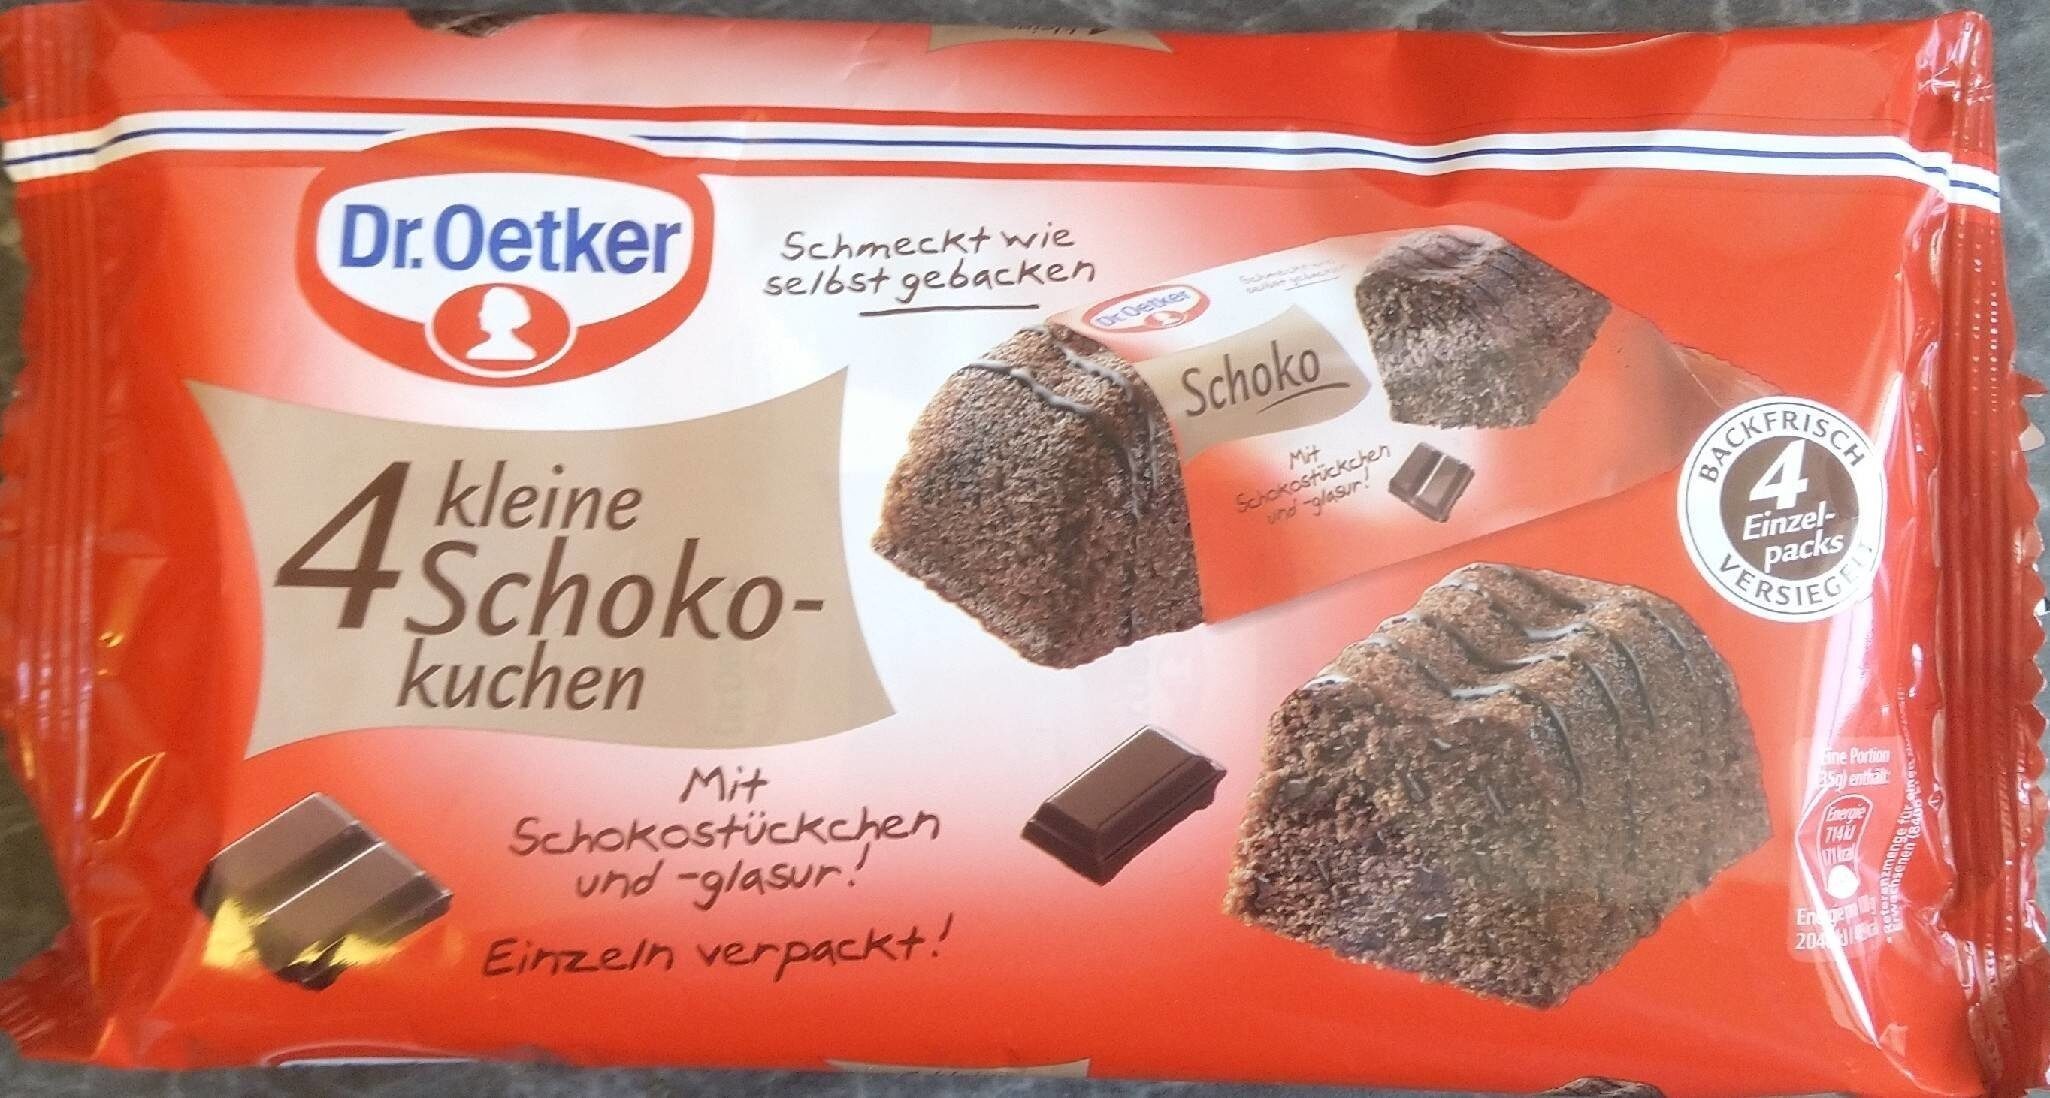 4 kleine Schoko-kuchen - Product - en